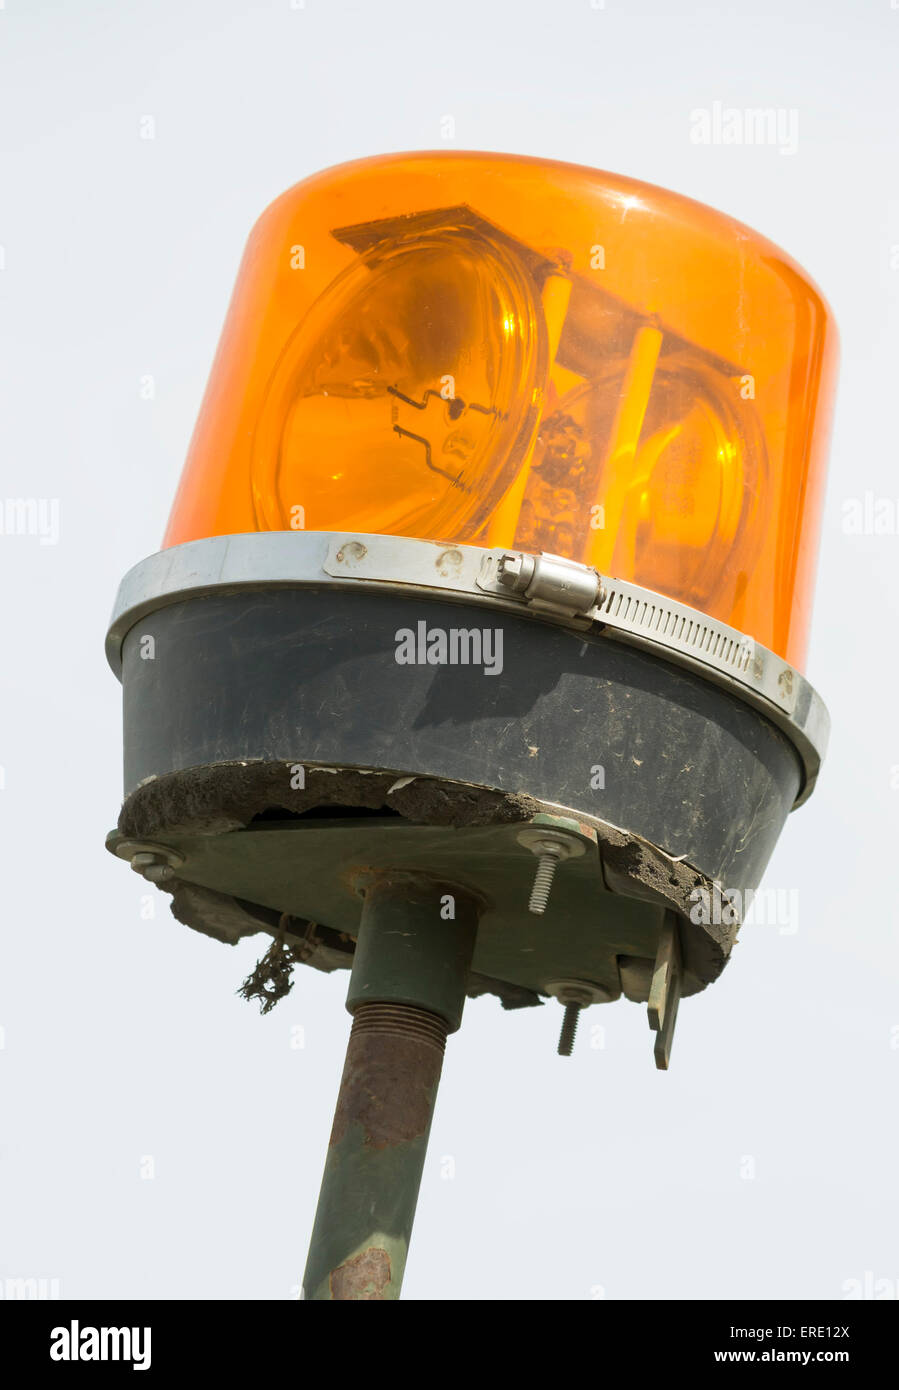 Detalle del sistema de iluminación del vehículo de emergencia, naranja baliza con espejos giratorios Foto de stock